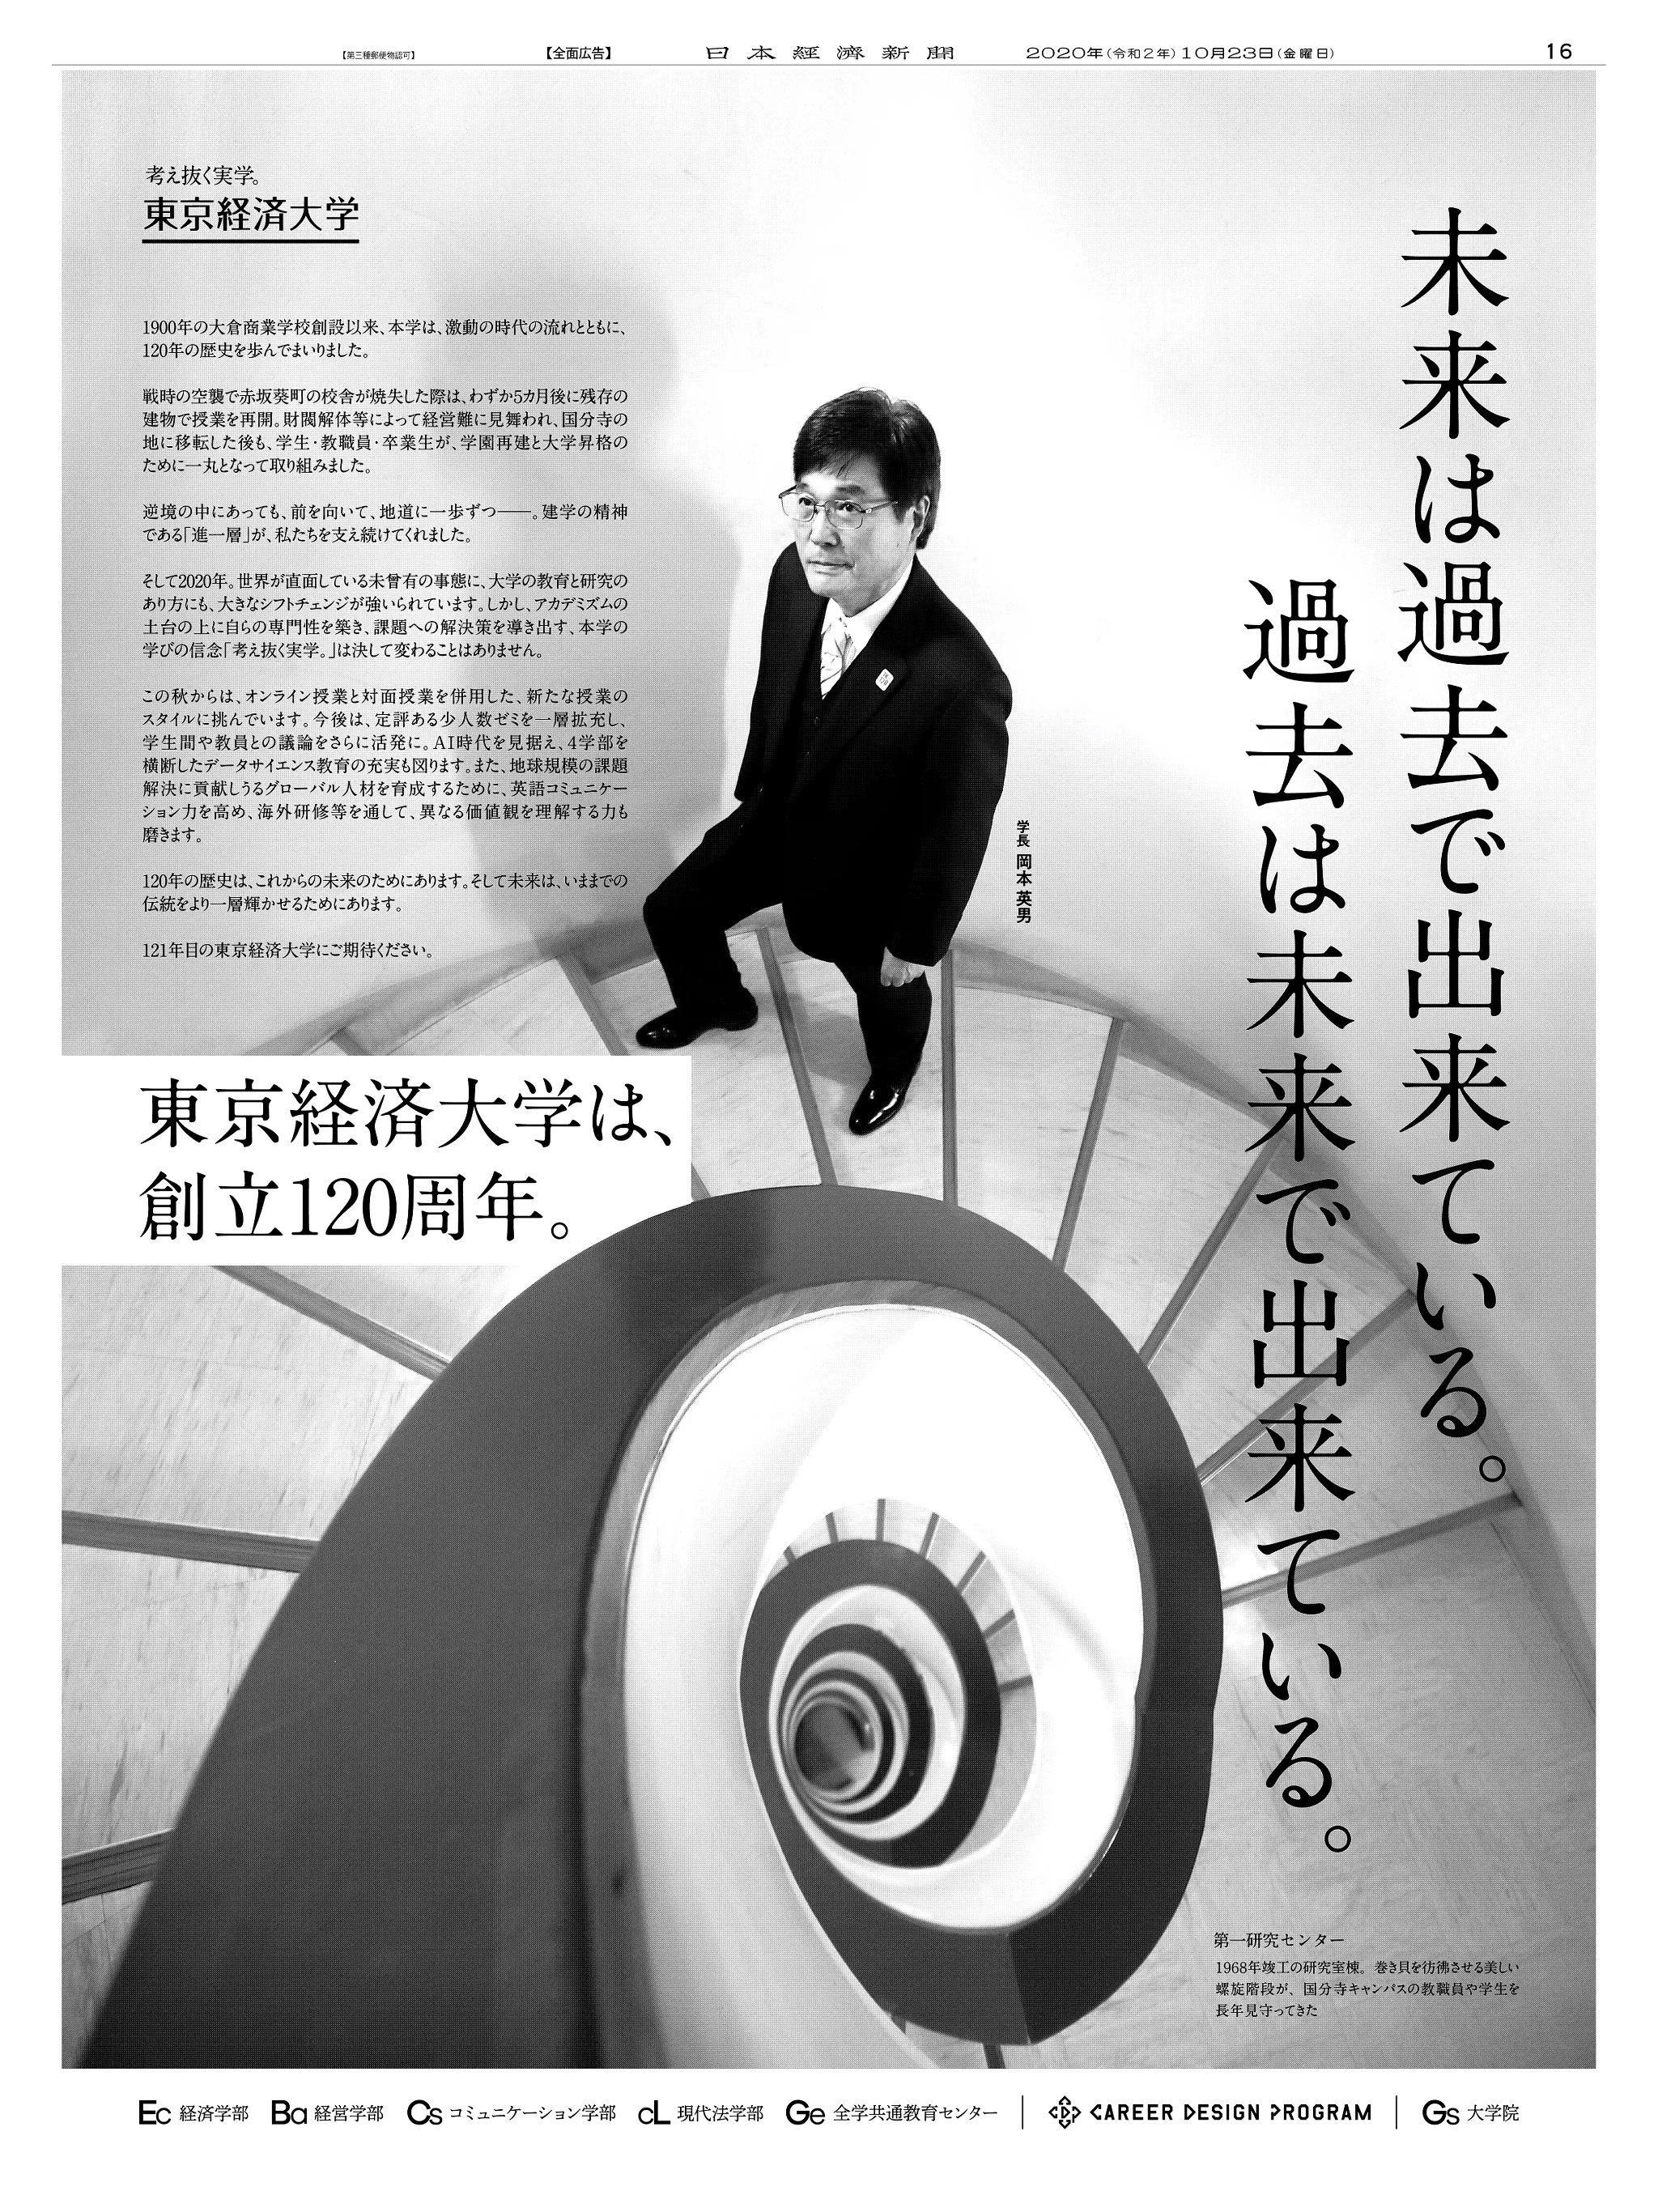 周年記念広告事例 「東京経済大学 創立120周年」